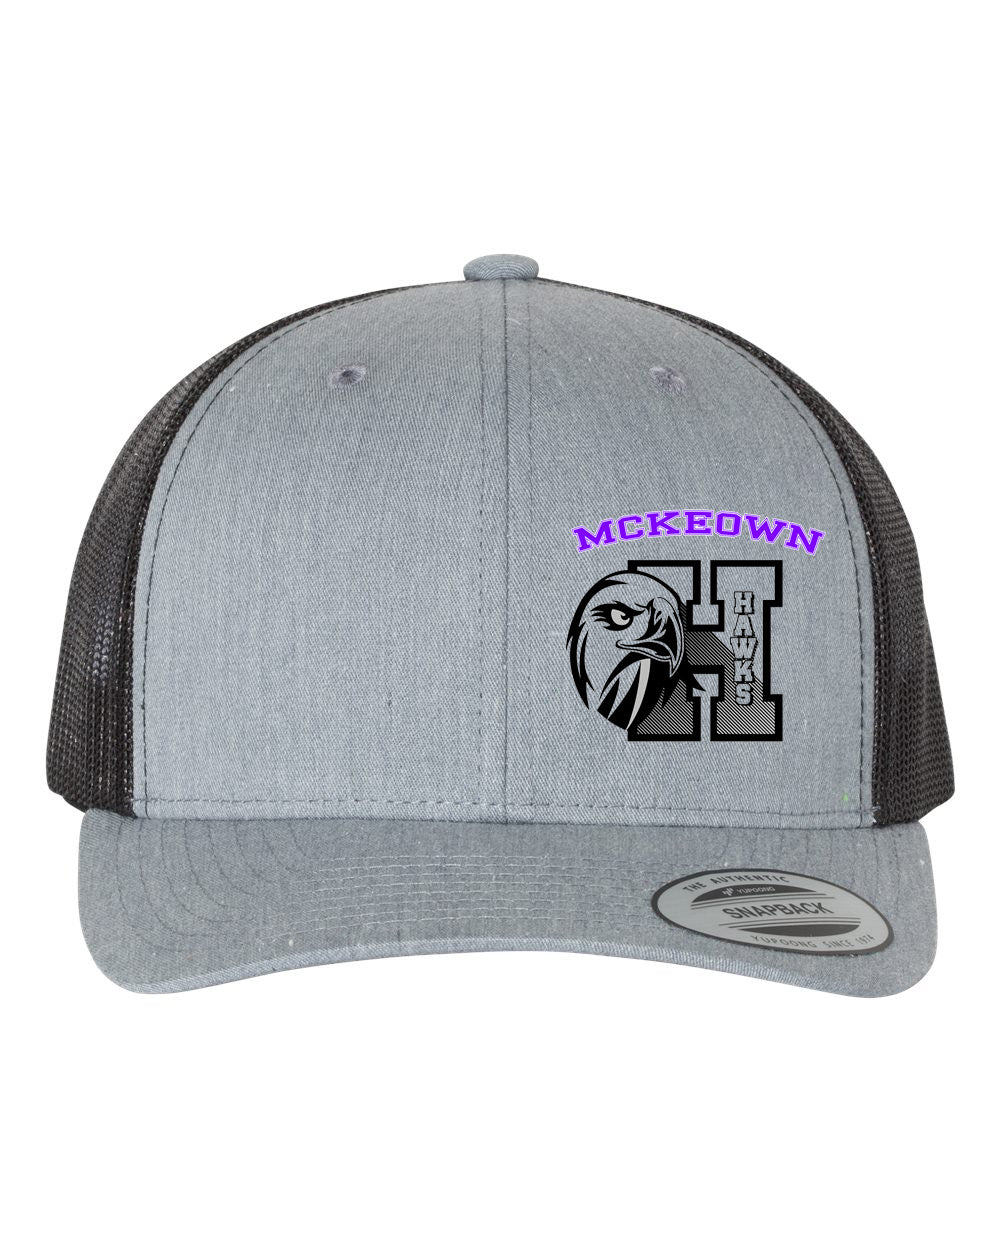 McKeown Design 10 Trucker Hat